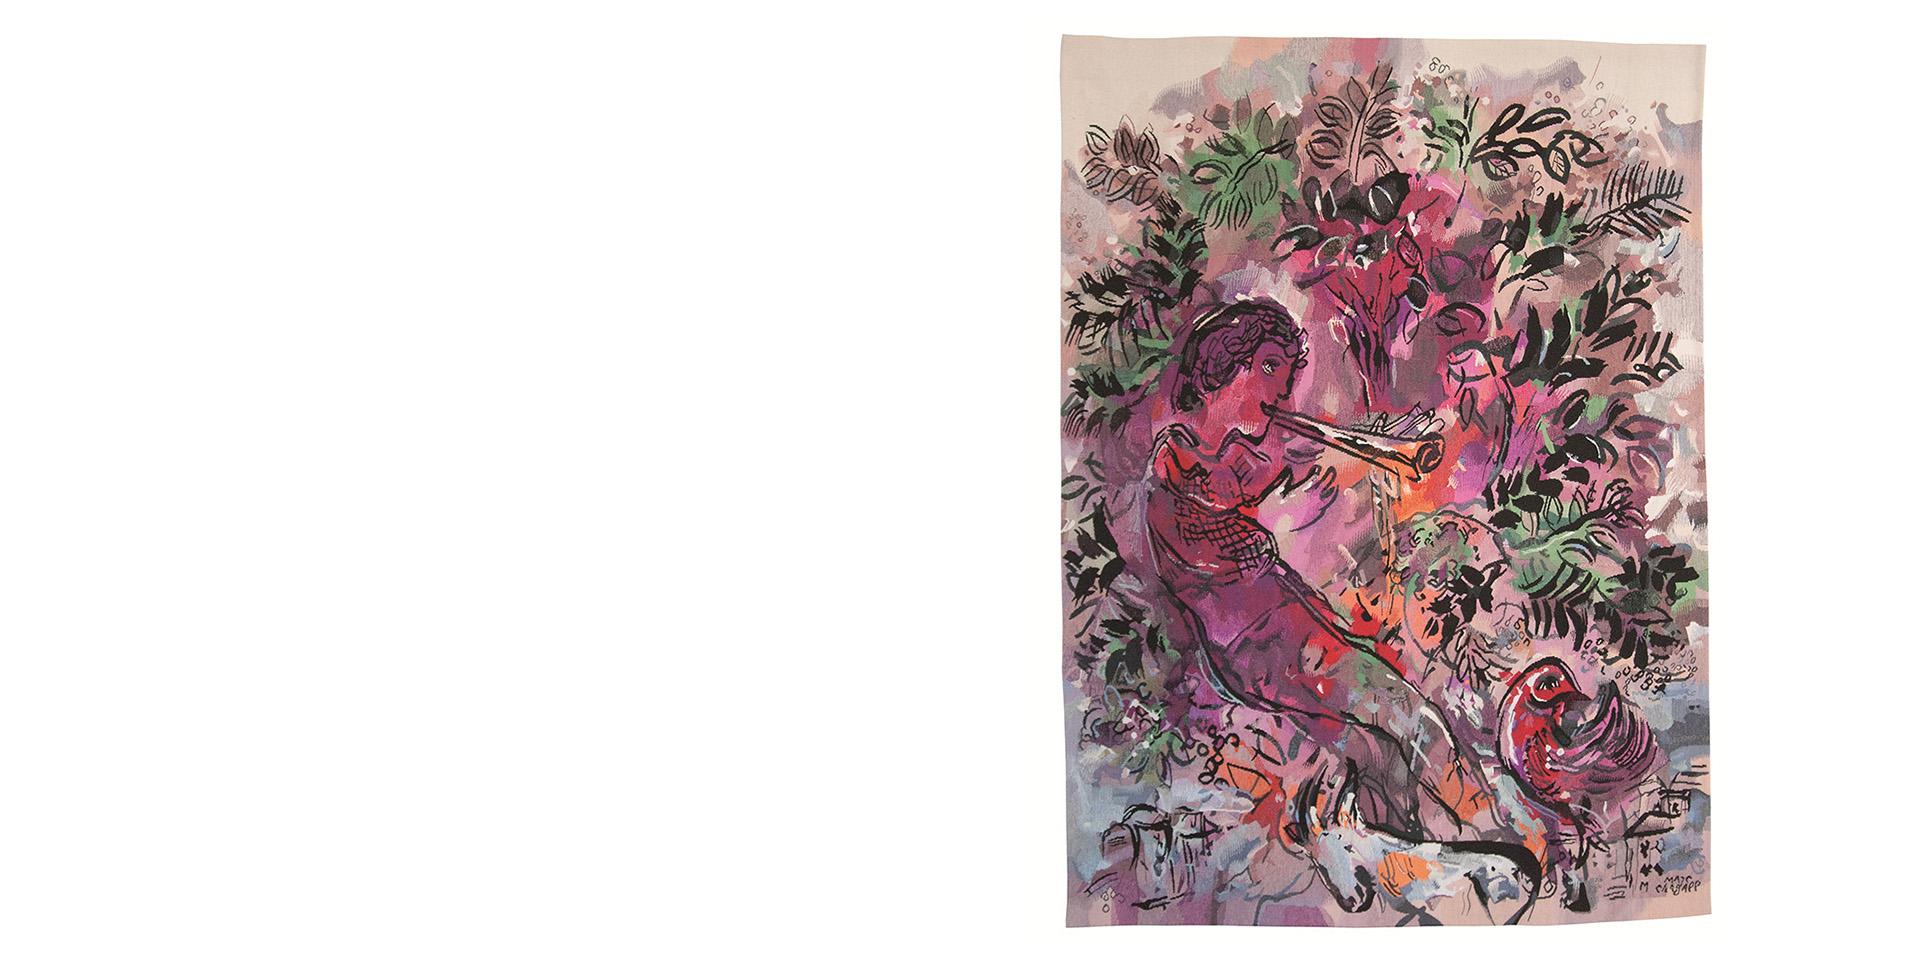 apisserie réalisée d'après Le Garçon dans les fleurs (1955), de Marc Chagall. Maître d'œuvre : Yvette Cauqil-Prince © ADAGP, Paris, 2022.